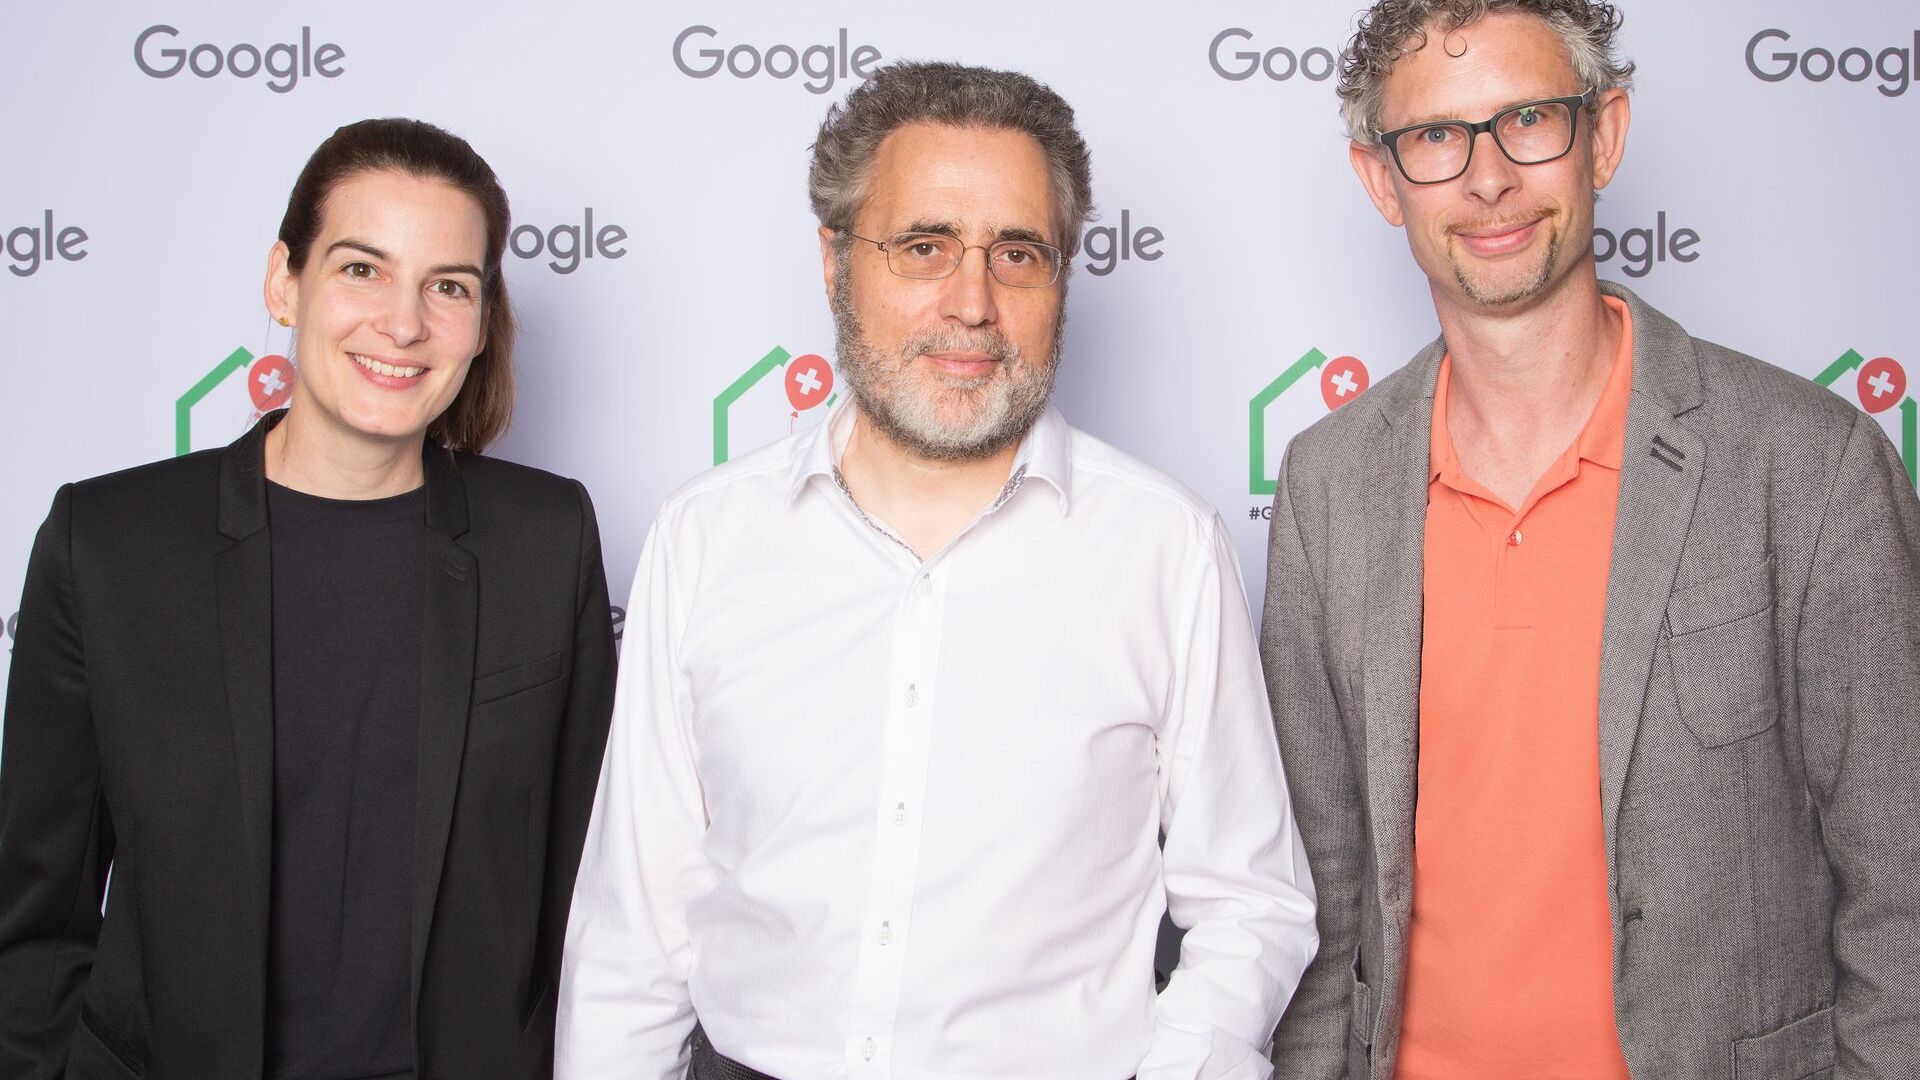 Urs Hölzle, starszy wiceprezes ds. infrastruktury technicznej oraz Pia De Carli i Samuel Leiser ze Szwajcarii, zespół medialny, wzięli udział w oficjalnej inauguracji nowego kampusu Europaallee Google w Zurychu 27 czerwca 2022 r.